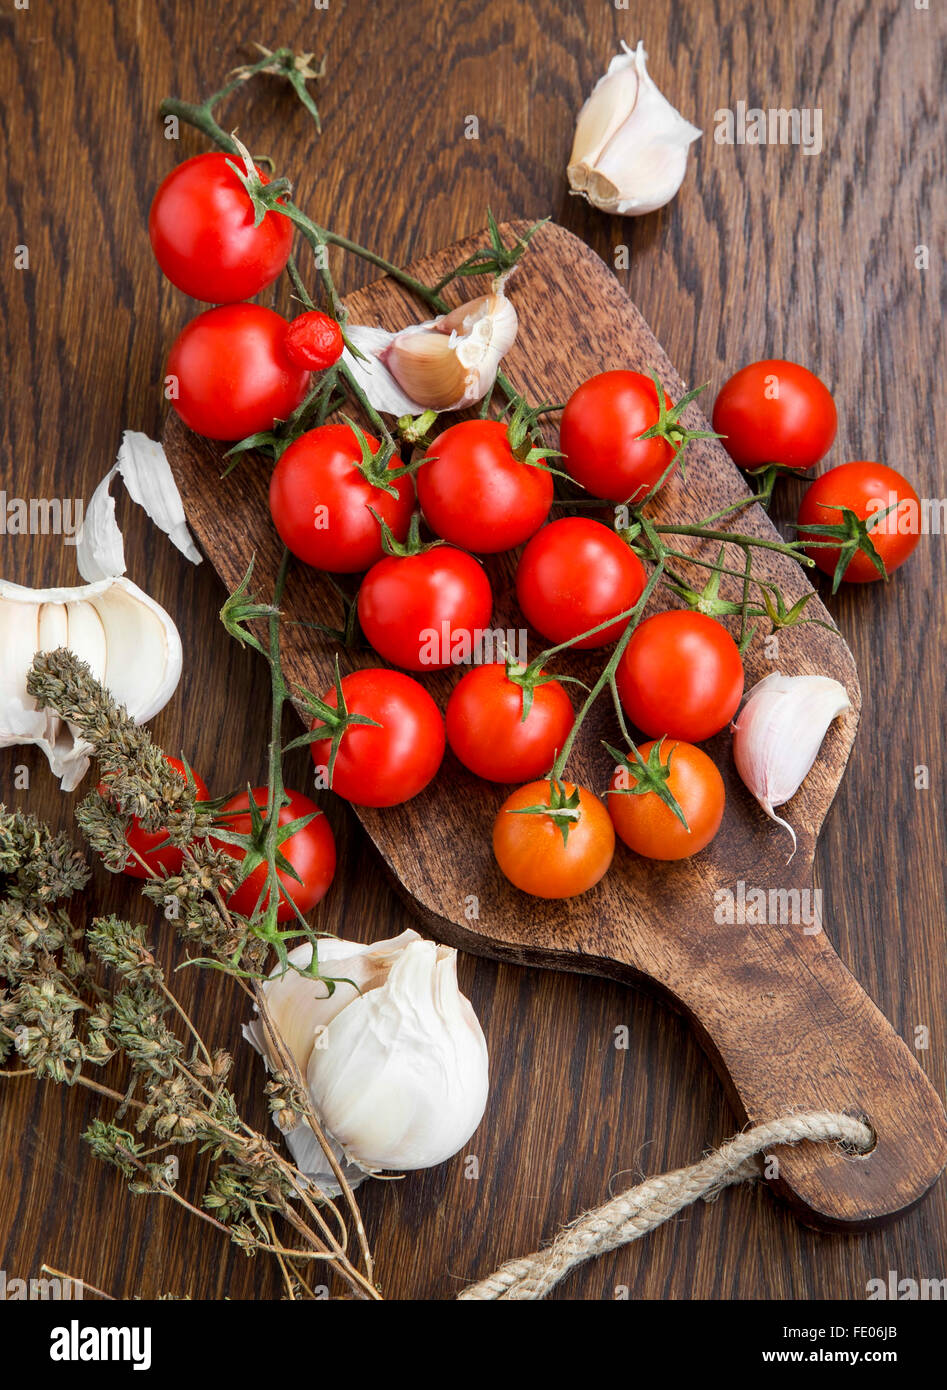 Tomates cerise bio avec de l'ail et le thym herb sur une table en bois Banque D'Images